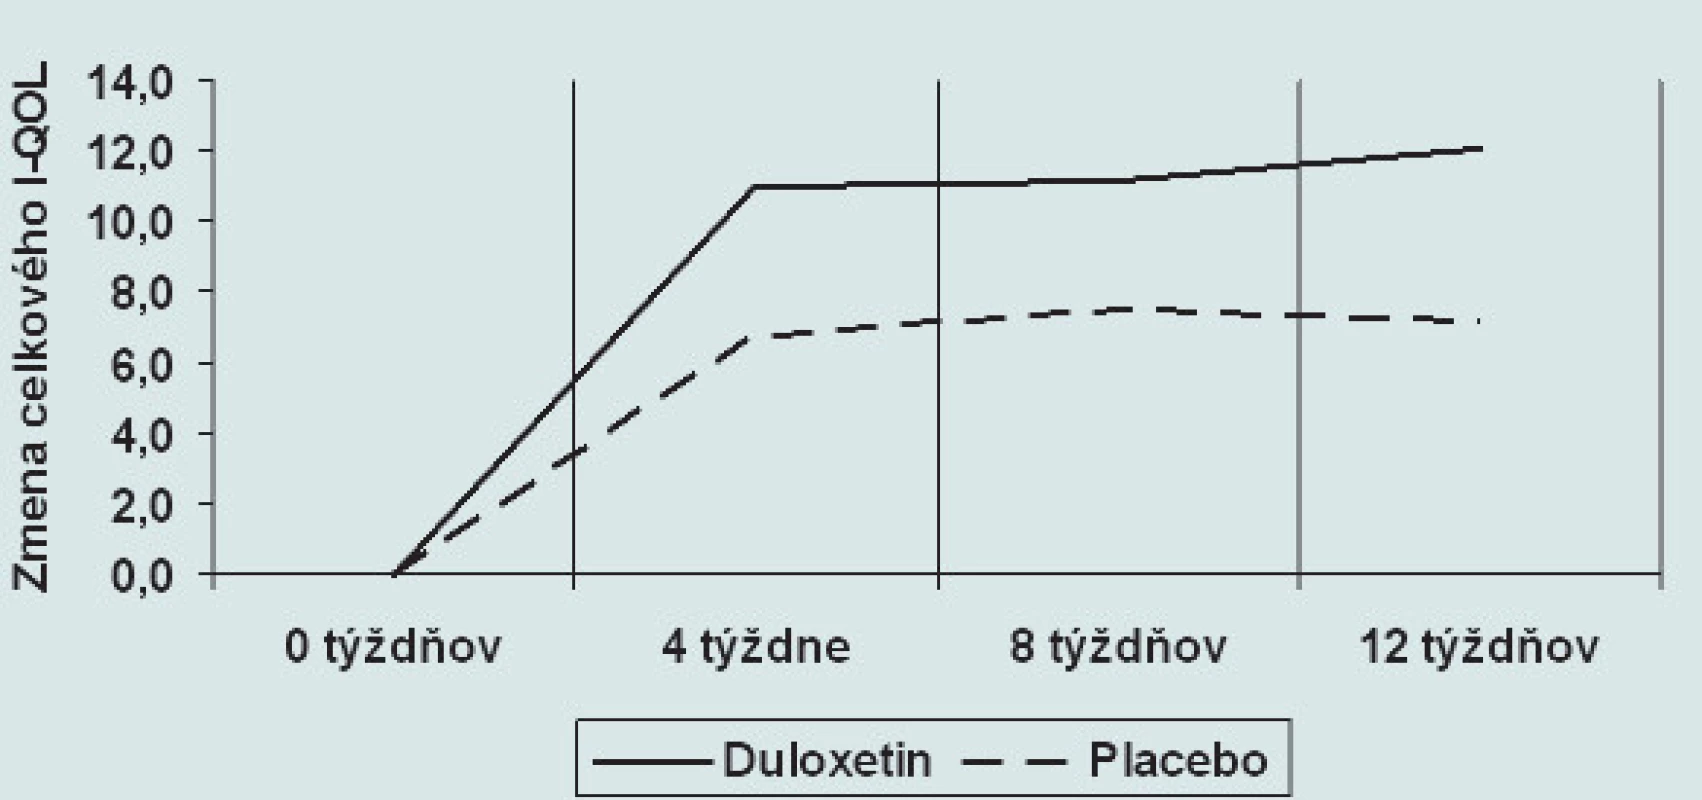 Zmena celkového I-QOL pri medikamentóznej liečbe duloxetinom(p &lt; 0,05) a placebom (nesignifikantne) v tretej fáze klinického skúšania.